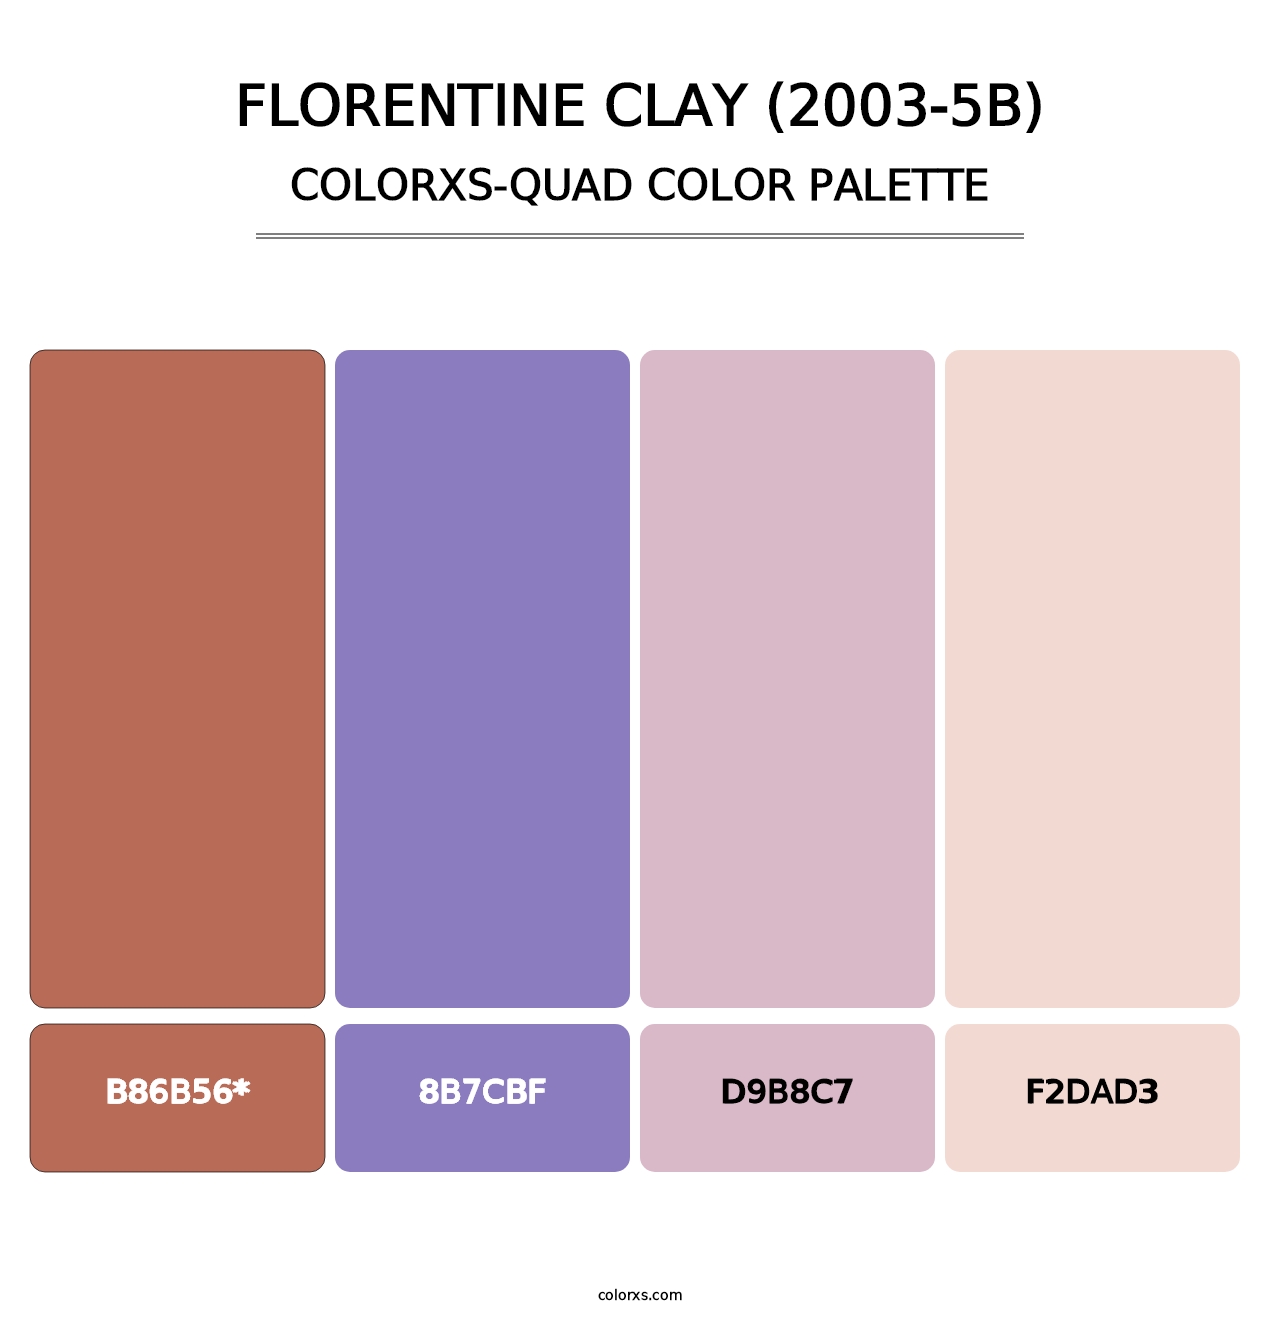 Florentine Clay (2003-5B) - Colorxs Quad Palette